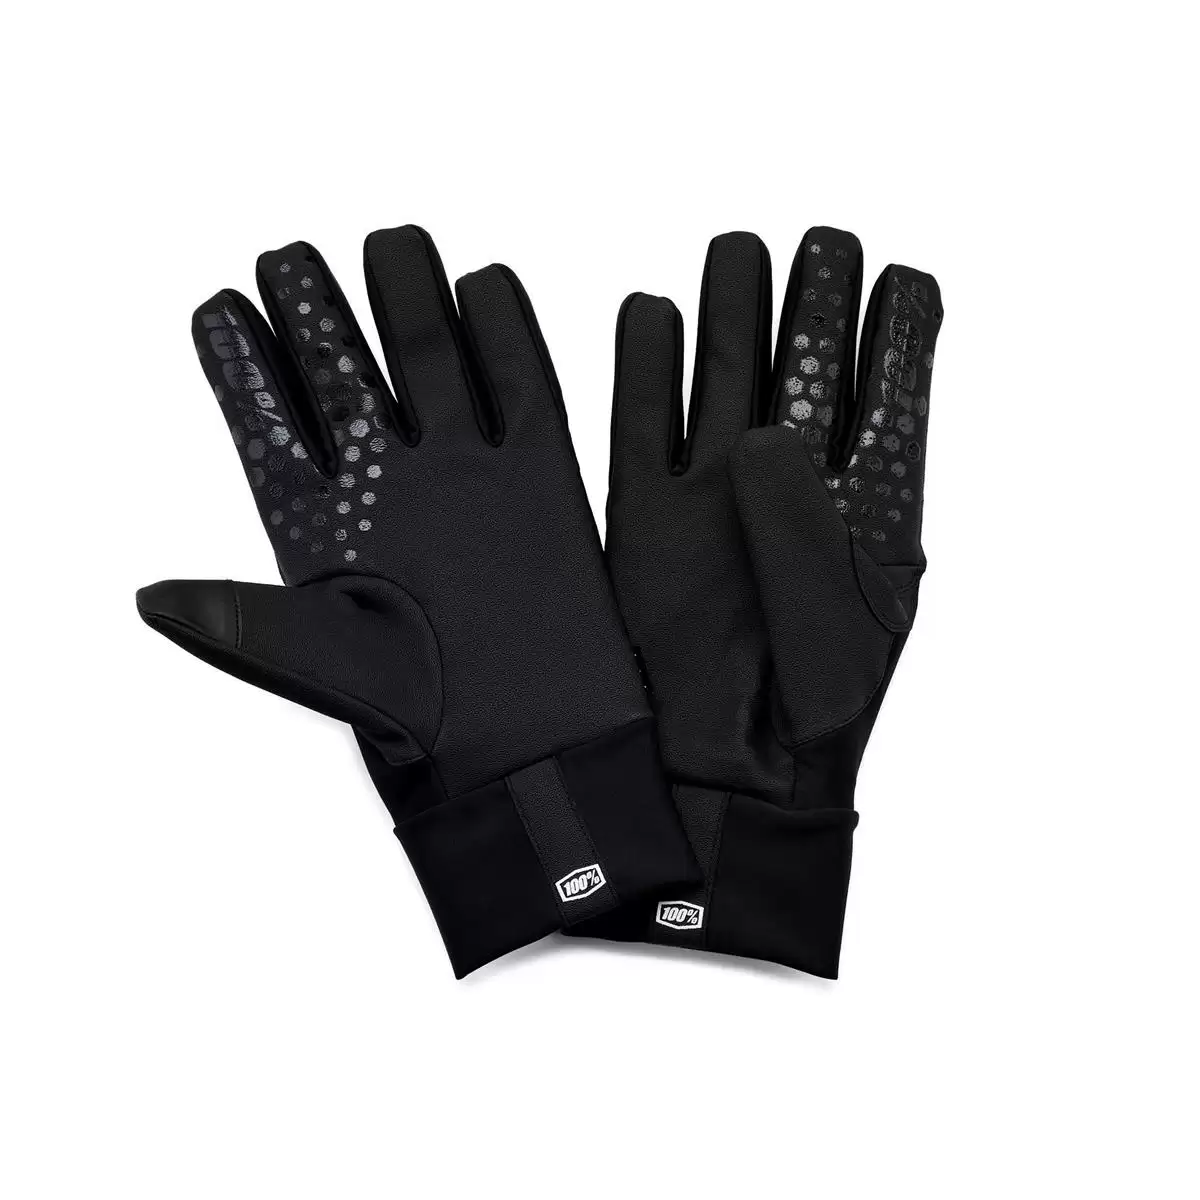 Waterproof Gloves Hydromatic Brisker Black Size M #1